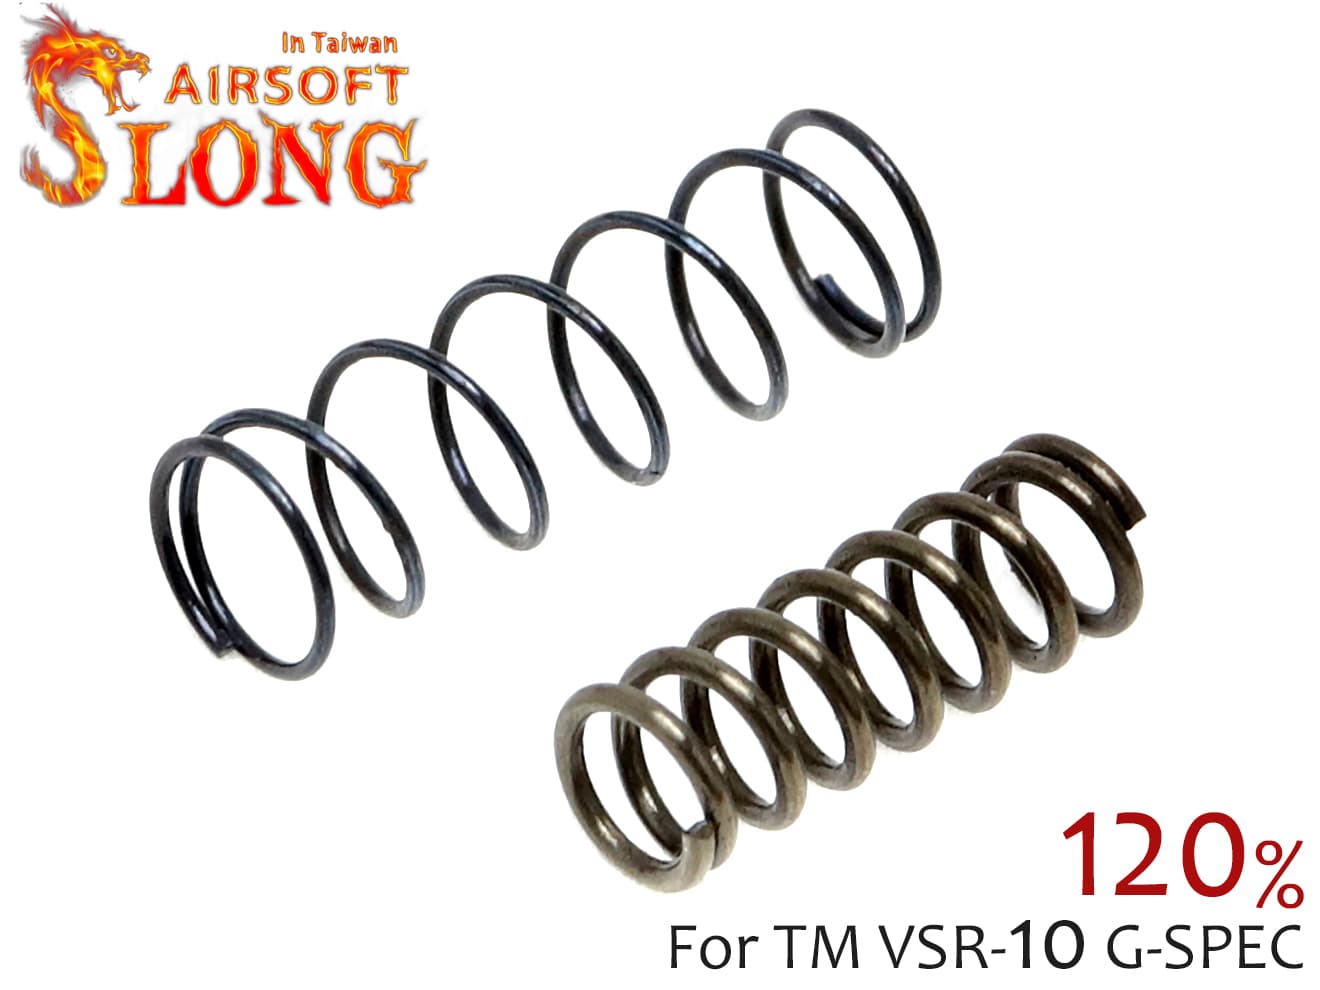 SLONG AIRSOFT 120% 強化トリガー＆シアー スプリング VSR-10